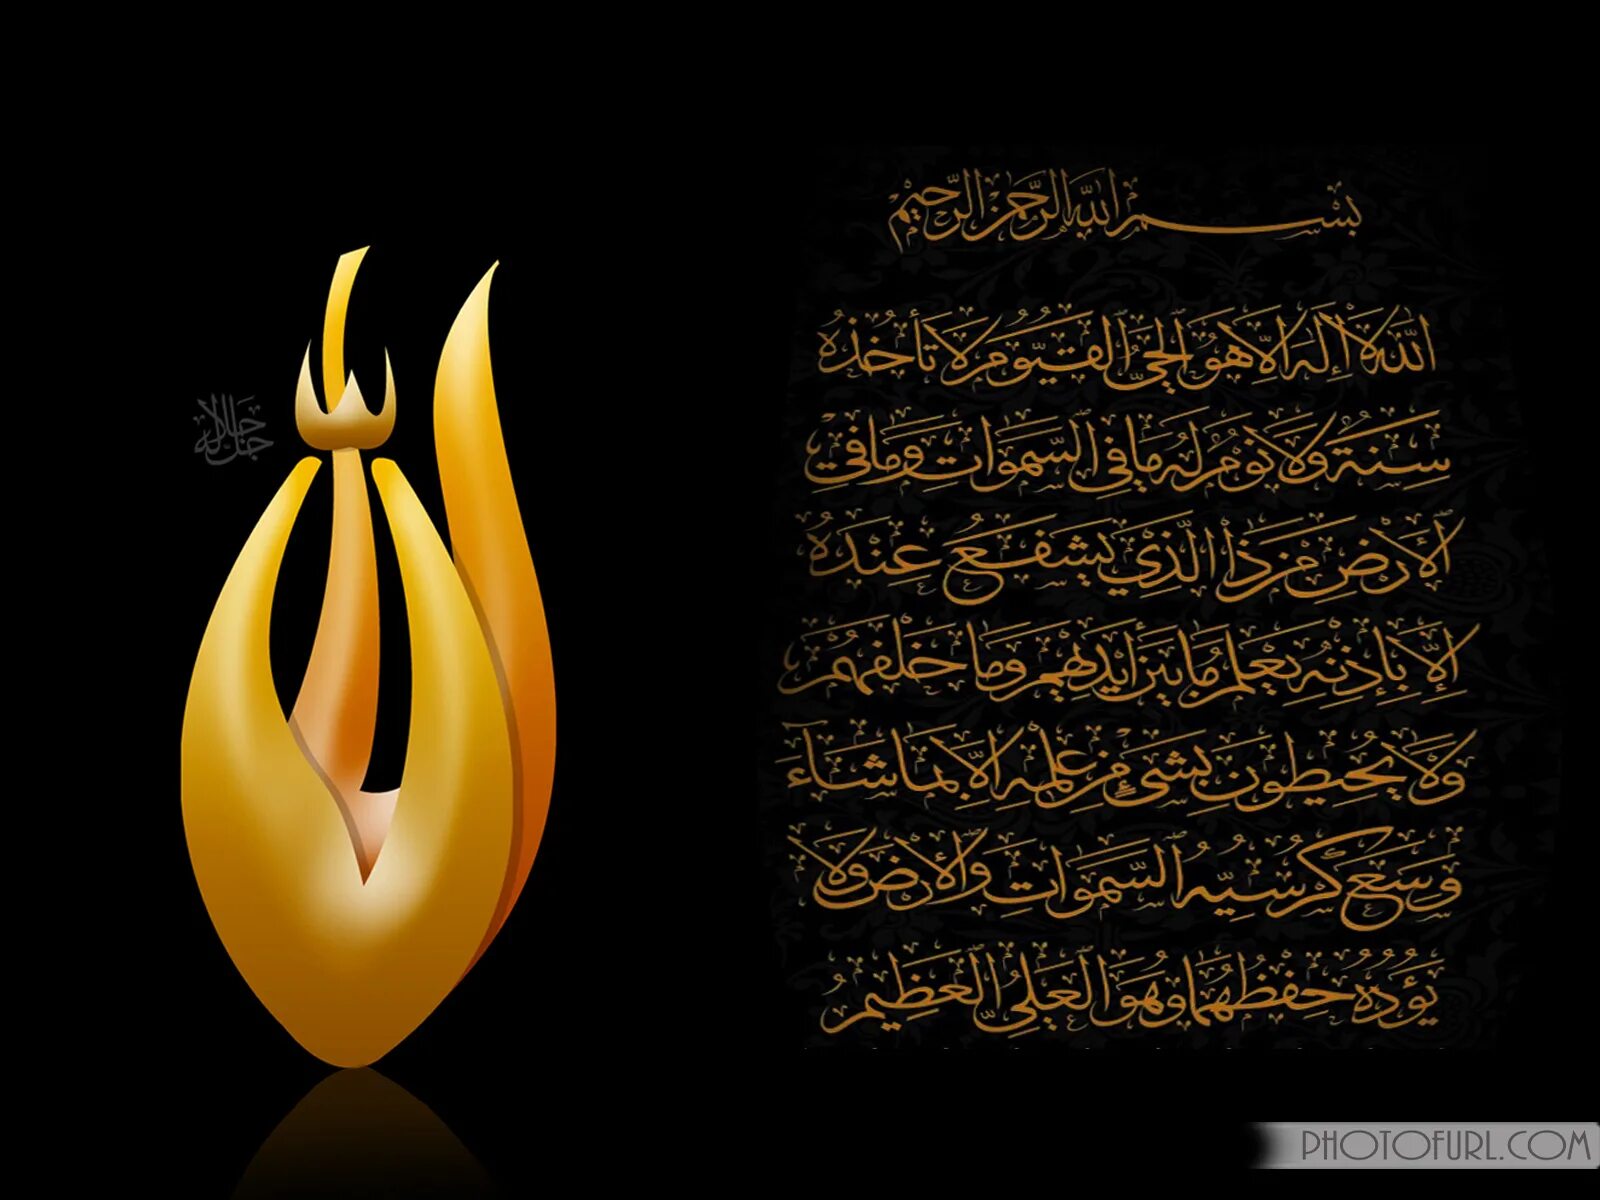 Коран аят Аль курси. Мусульманские заставки. Мусульманские заставки на телефон. Красивые аяты из Корана на арабском.